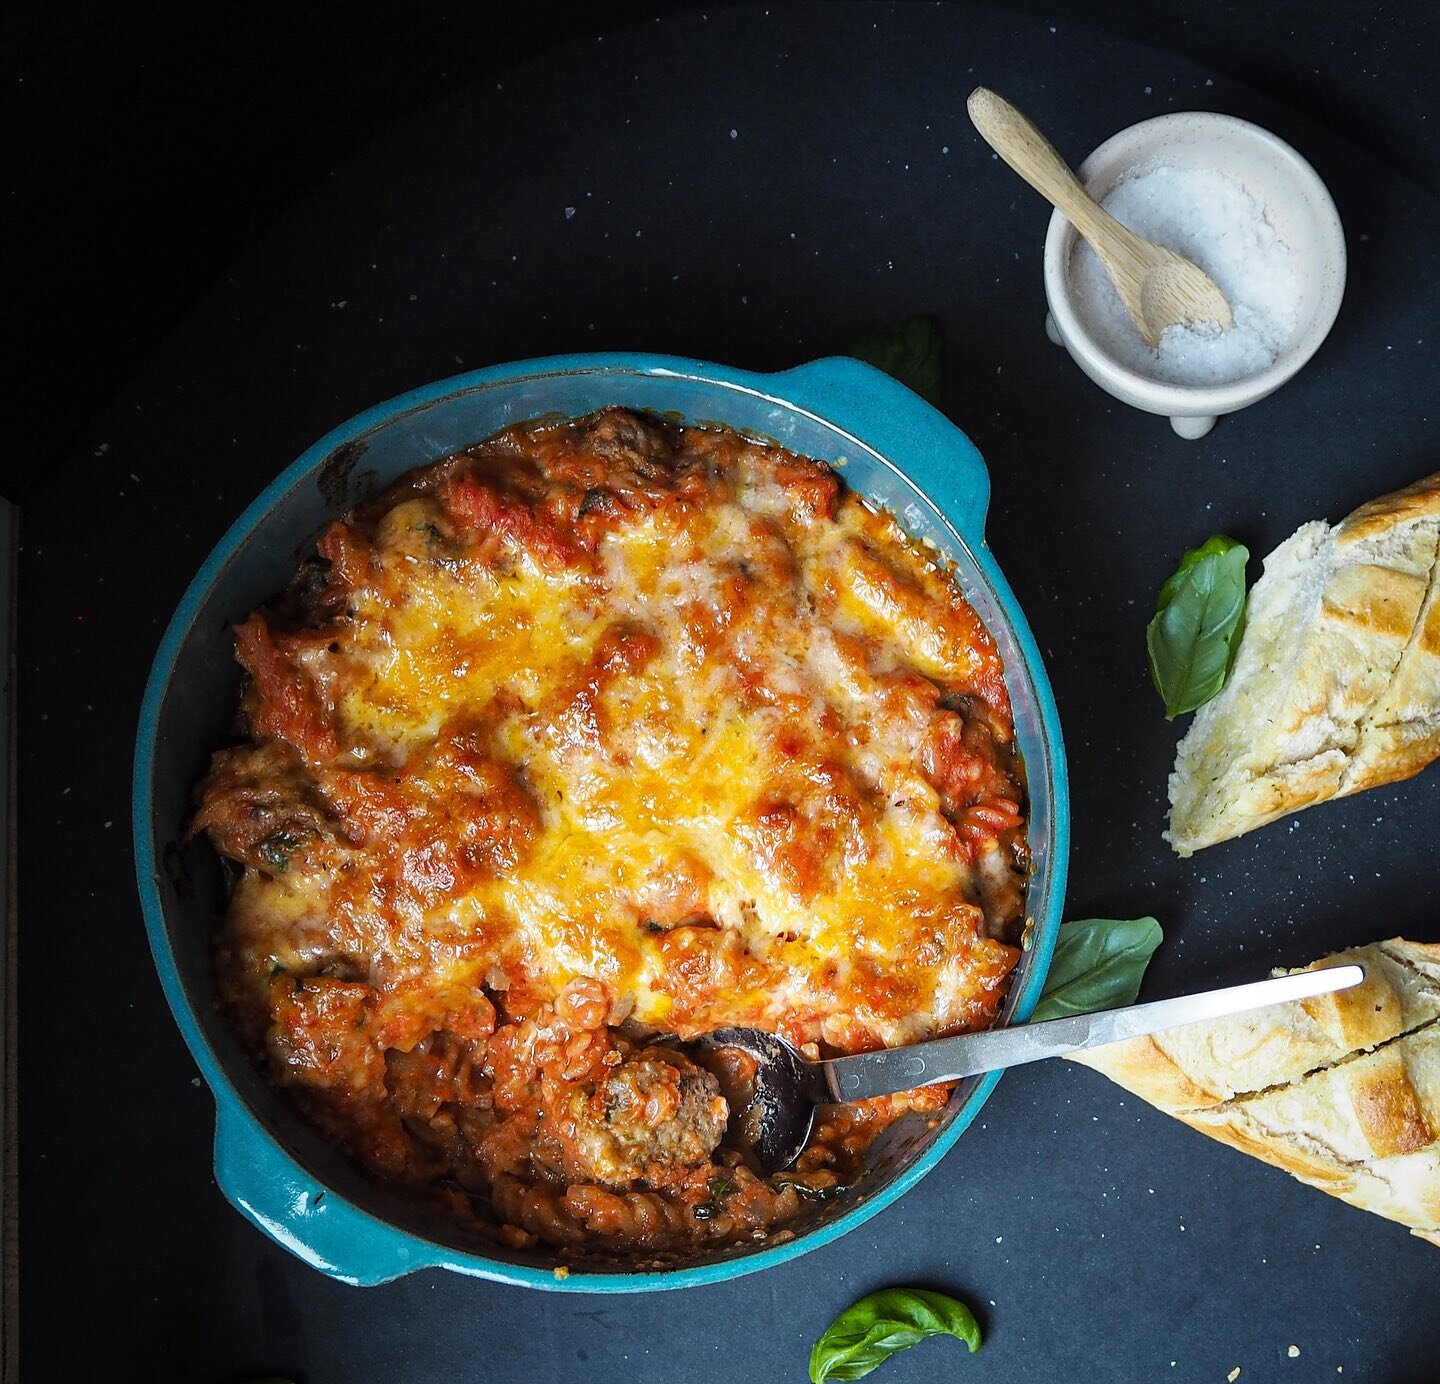 Gratinerte kj&oslash;ttboller med hvitl&oslash;ksbaguetter - perfekt kosemat🤤 Kj&oslash;ttbollene er mine italienske, her komplementert med en kremet tomatsaus og ost, digg digg digg👌🏻! #cooking #kosemat #helgemat #helgemiddag #helgekos #pasta #gr